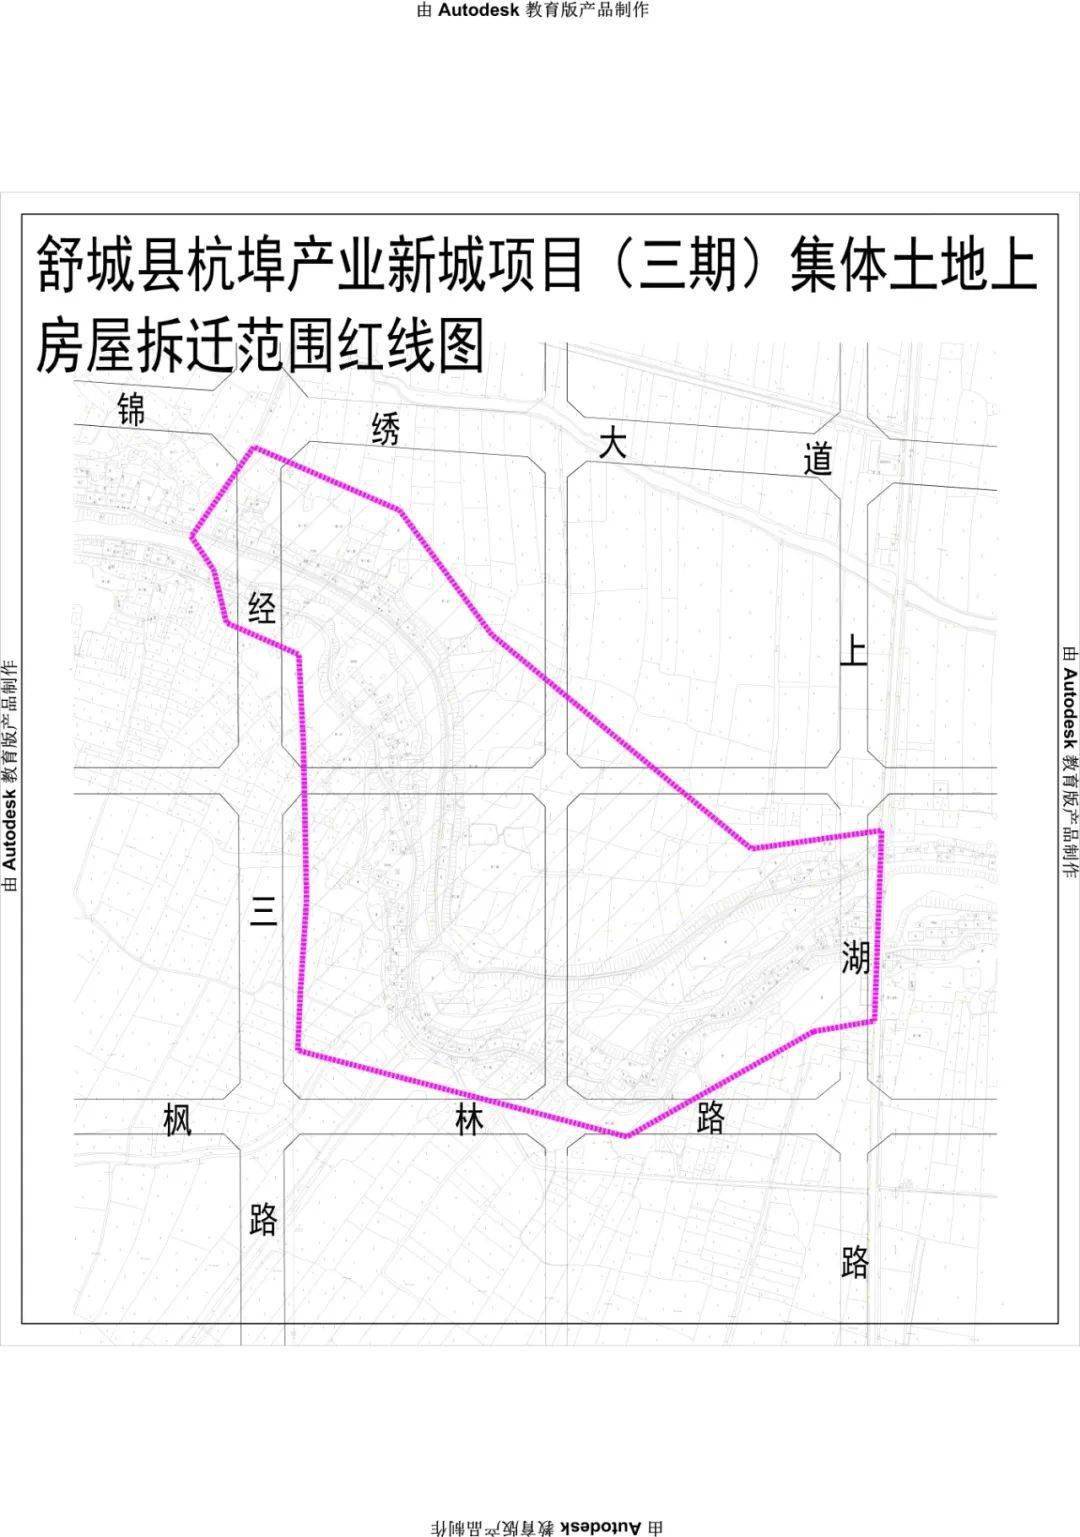 舒城县自然资源和规划局关于印发舒城县杭埠产业新城项目三期集体土地